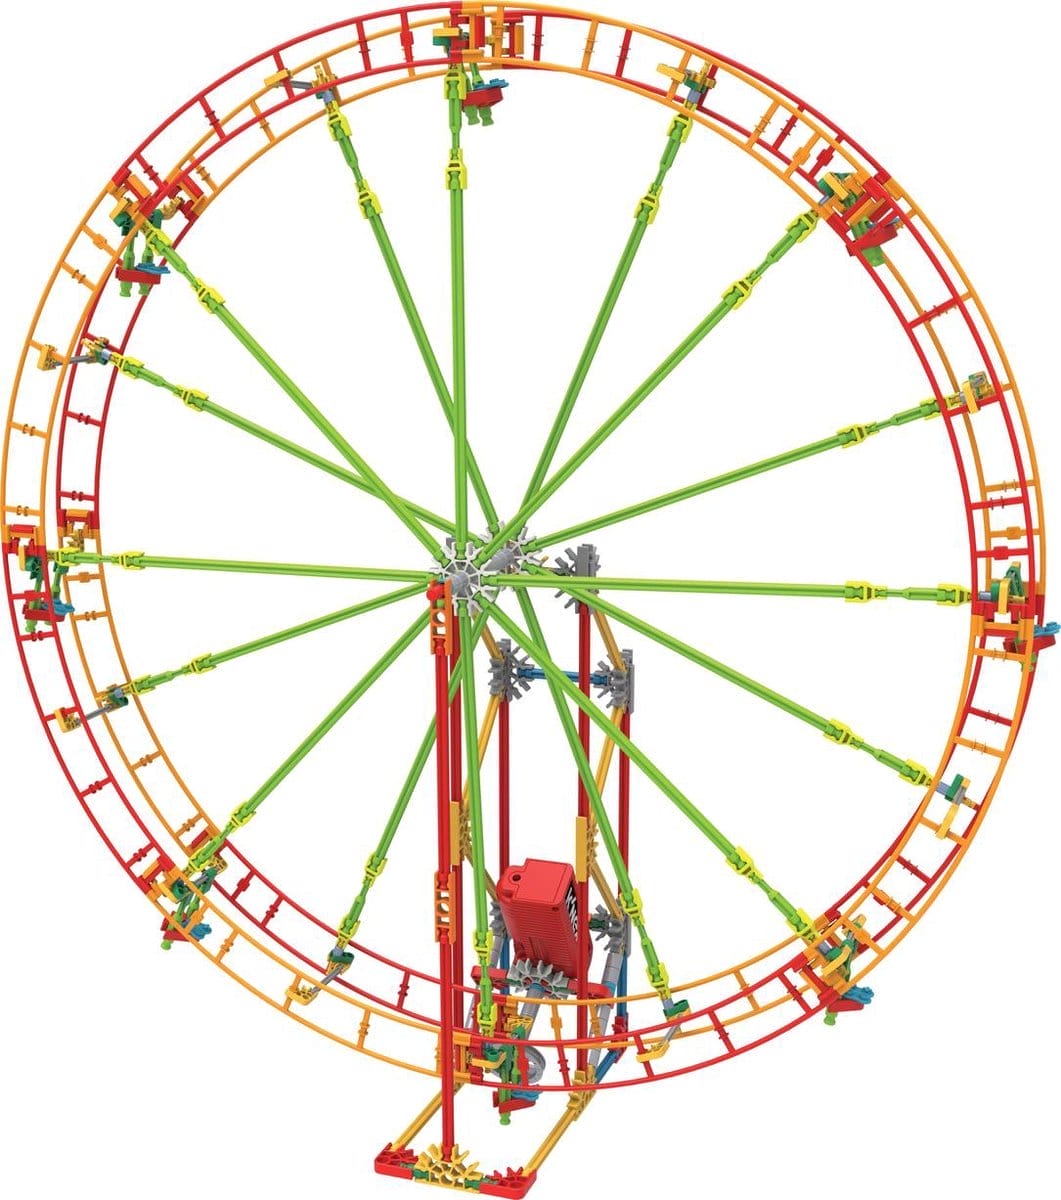 K'NEX Thrill Rides Revolution Ferris Wheel